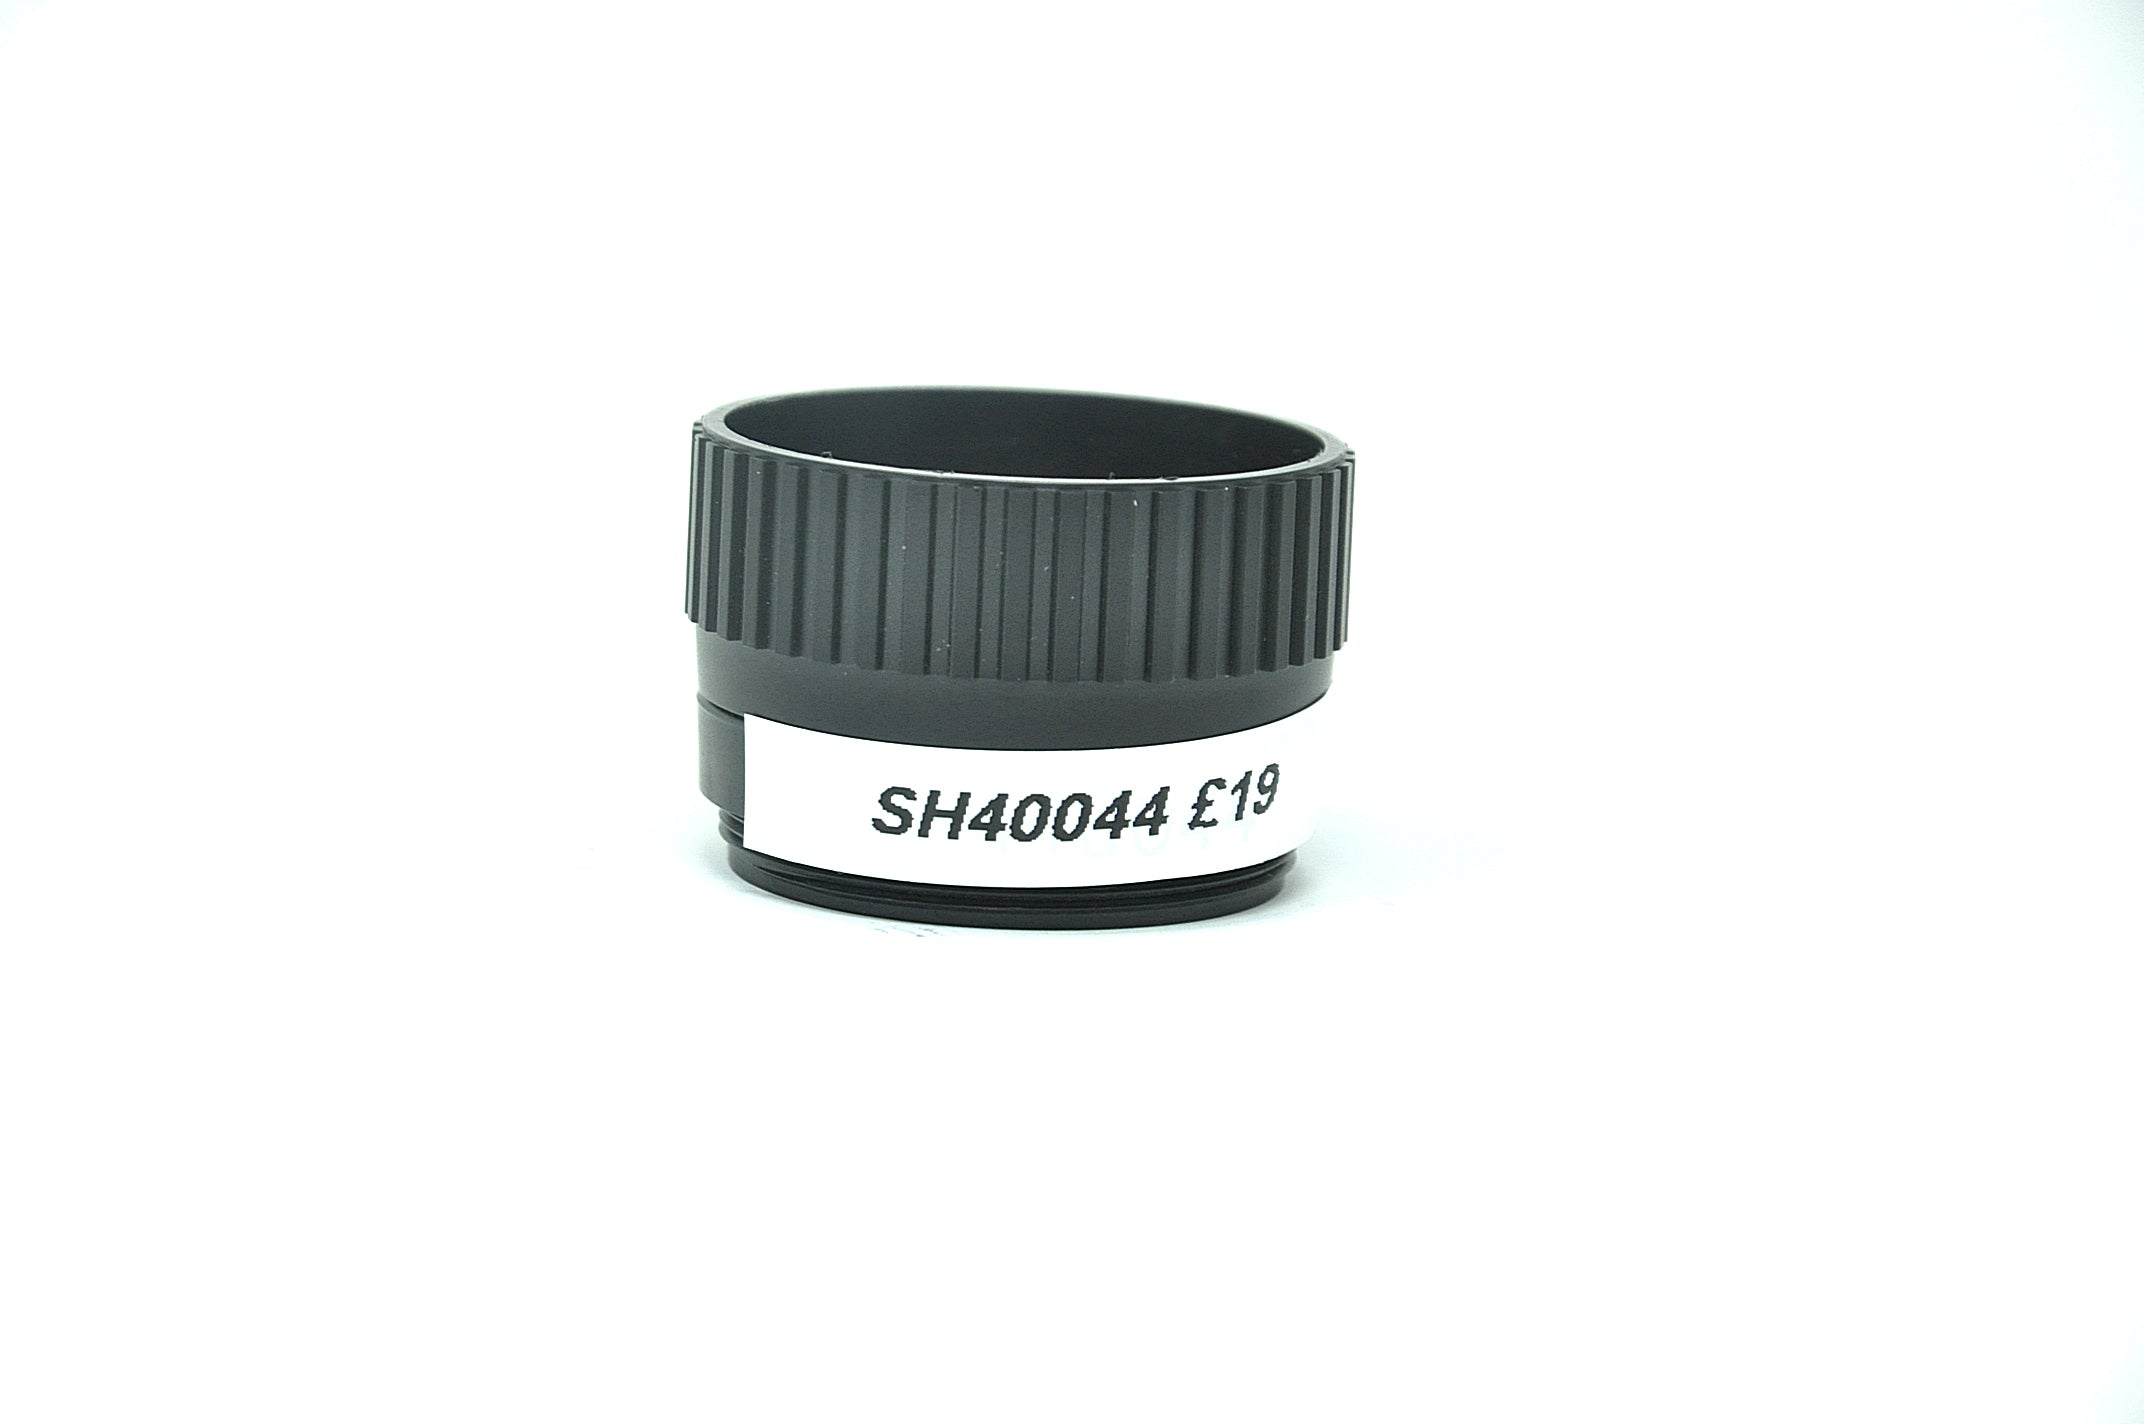 Used Rolleinar-EL 75mm F4.5 enlarging lens (SH40044)